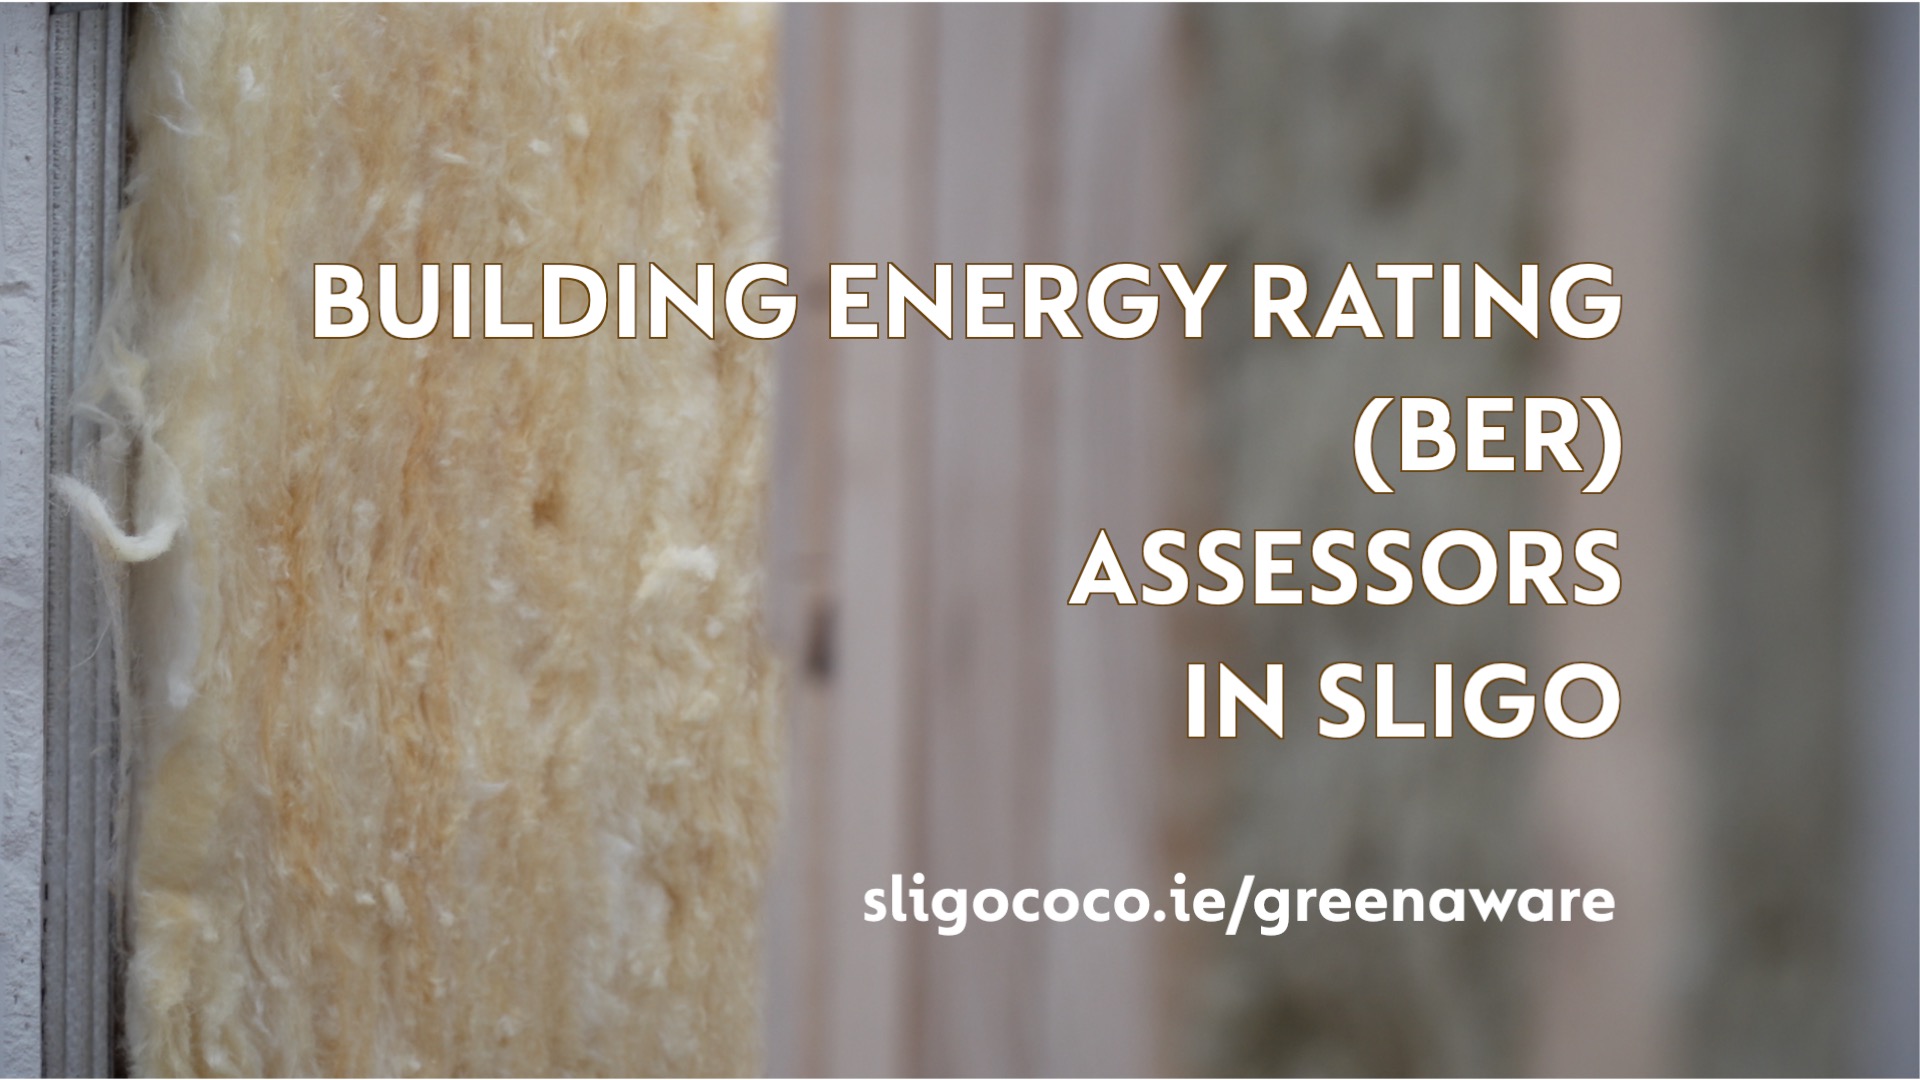 BER Assessment in Sligo